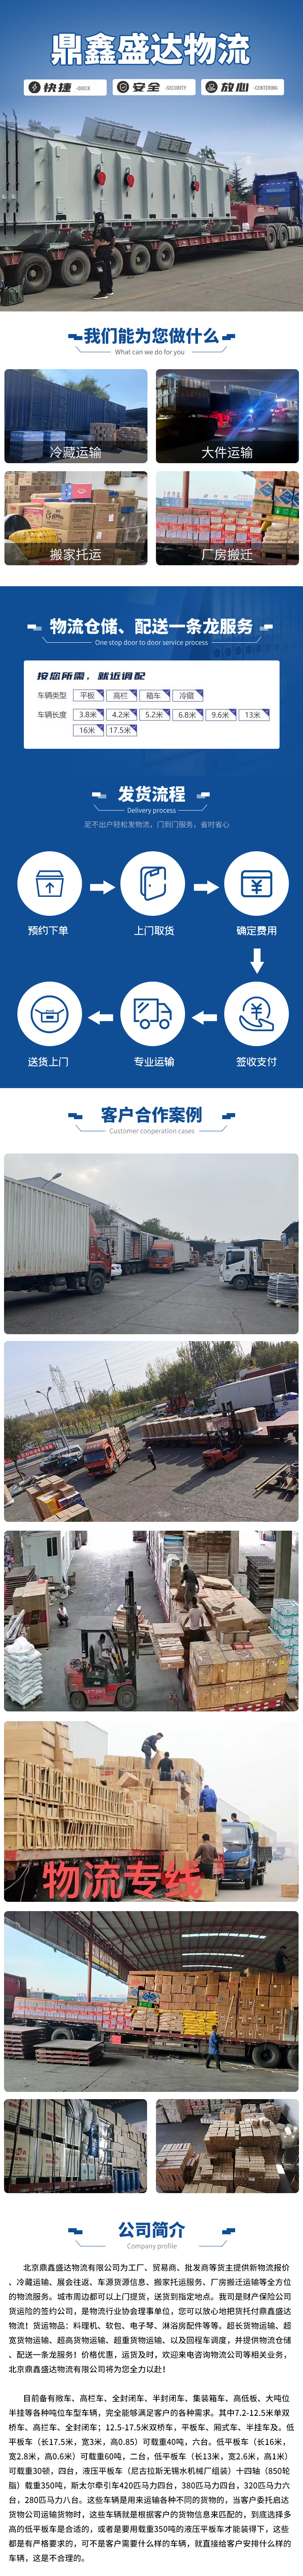 北京到柳州轿车物流运输